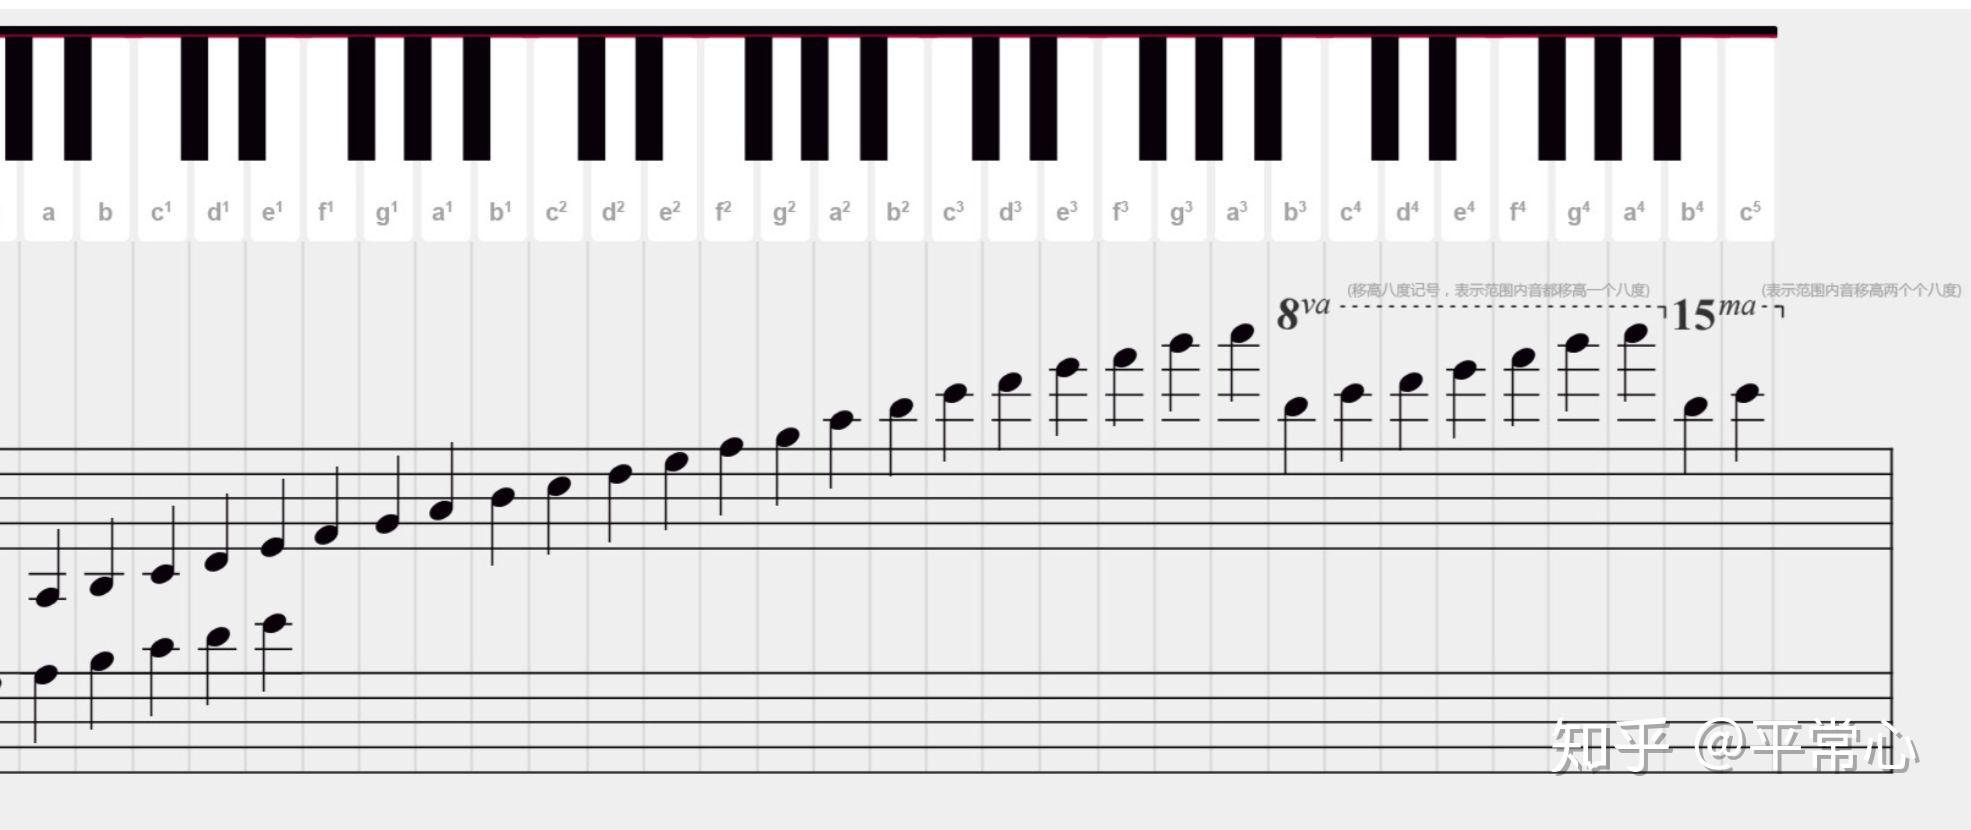 钢琴键盘布局、五线谱简介、音名、唱名、谱号、音的分组_note1 - 哔哩哔哩